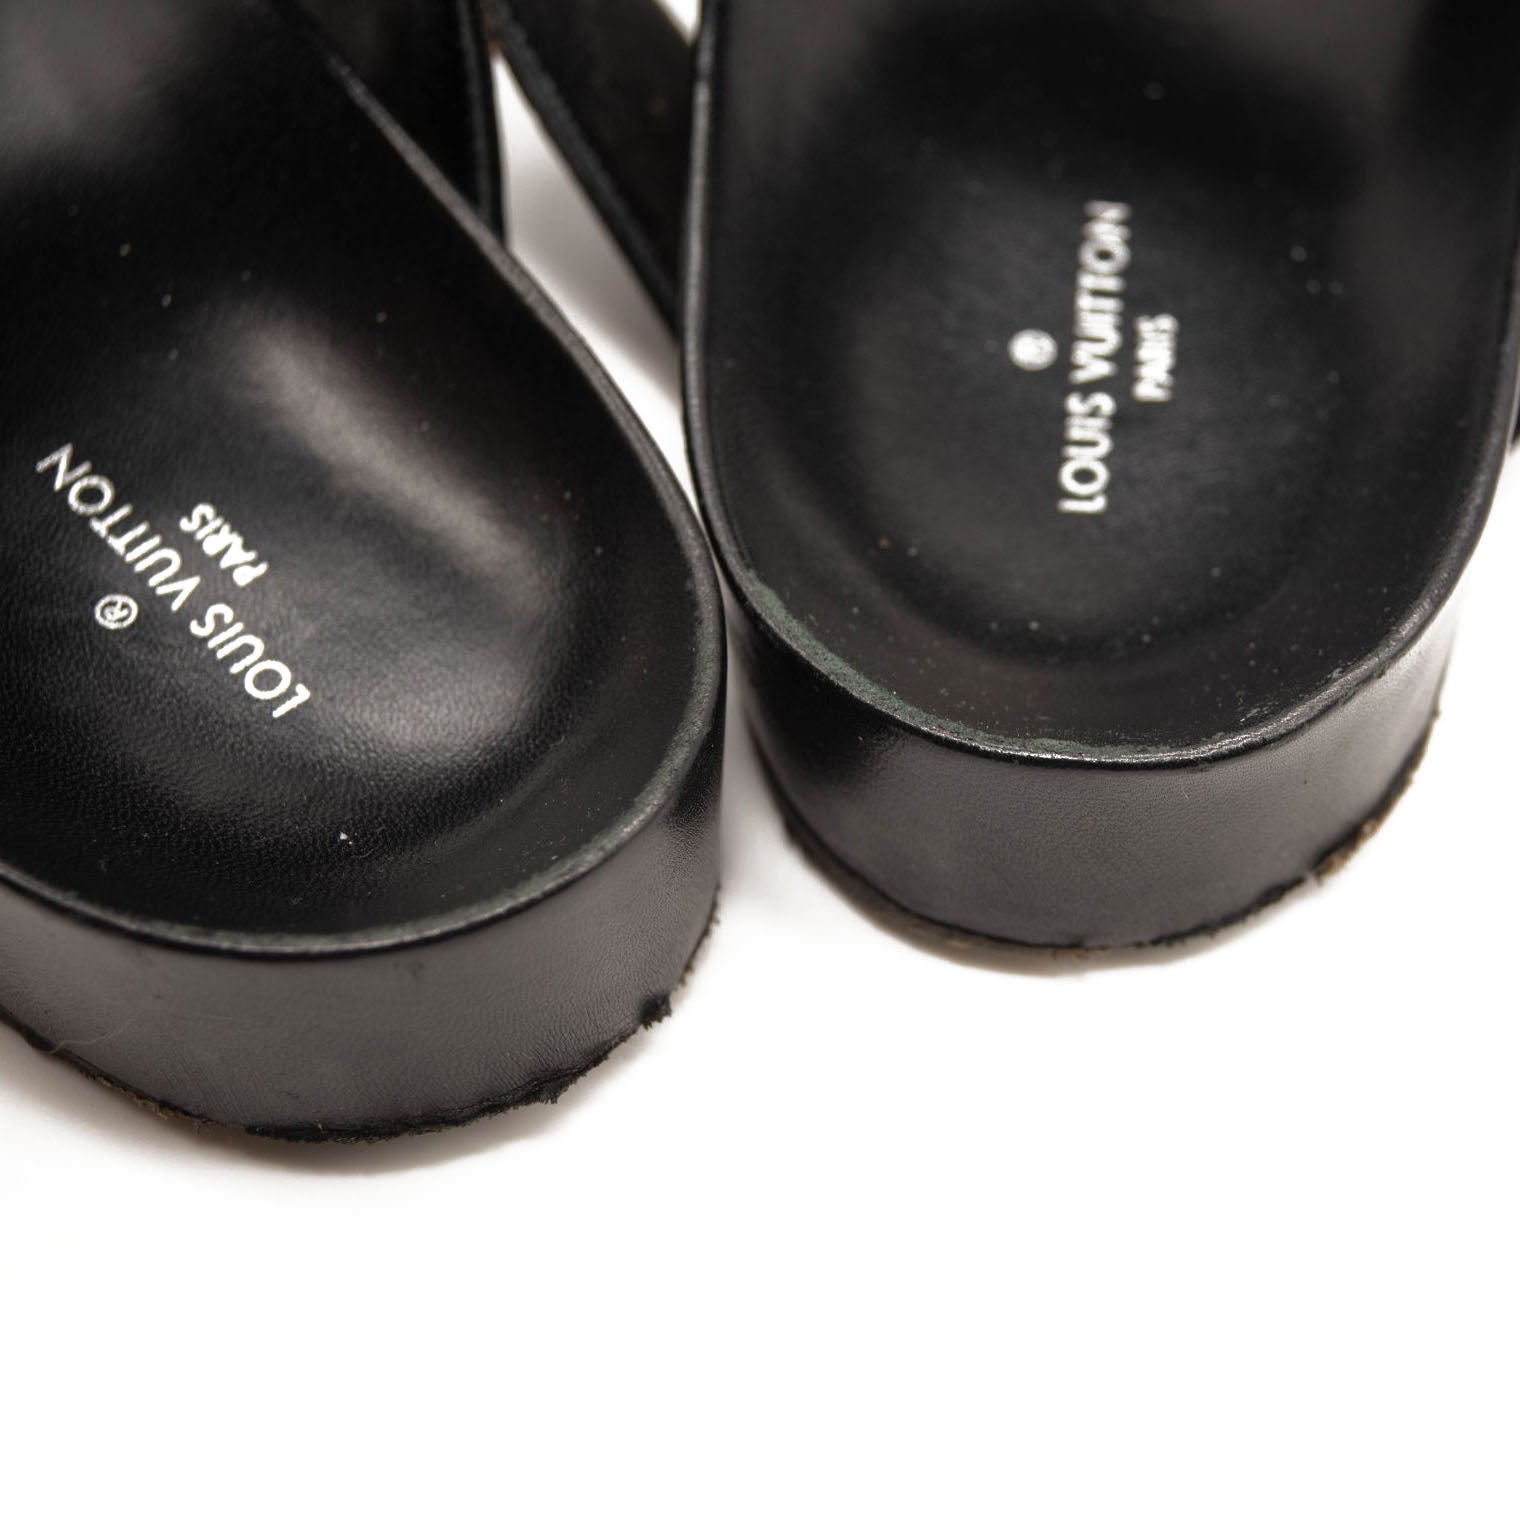 Louis Vuitton Women's New Wave Bom Dia Mule Sandals Leather Black 224646232